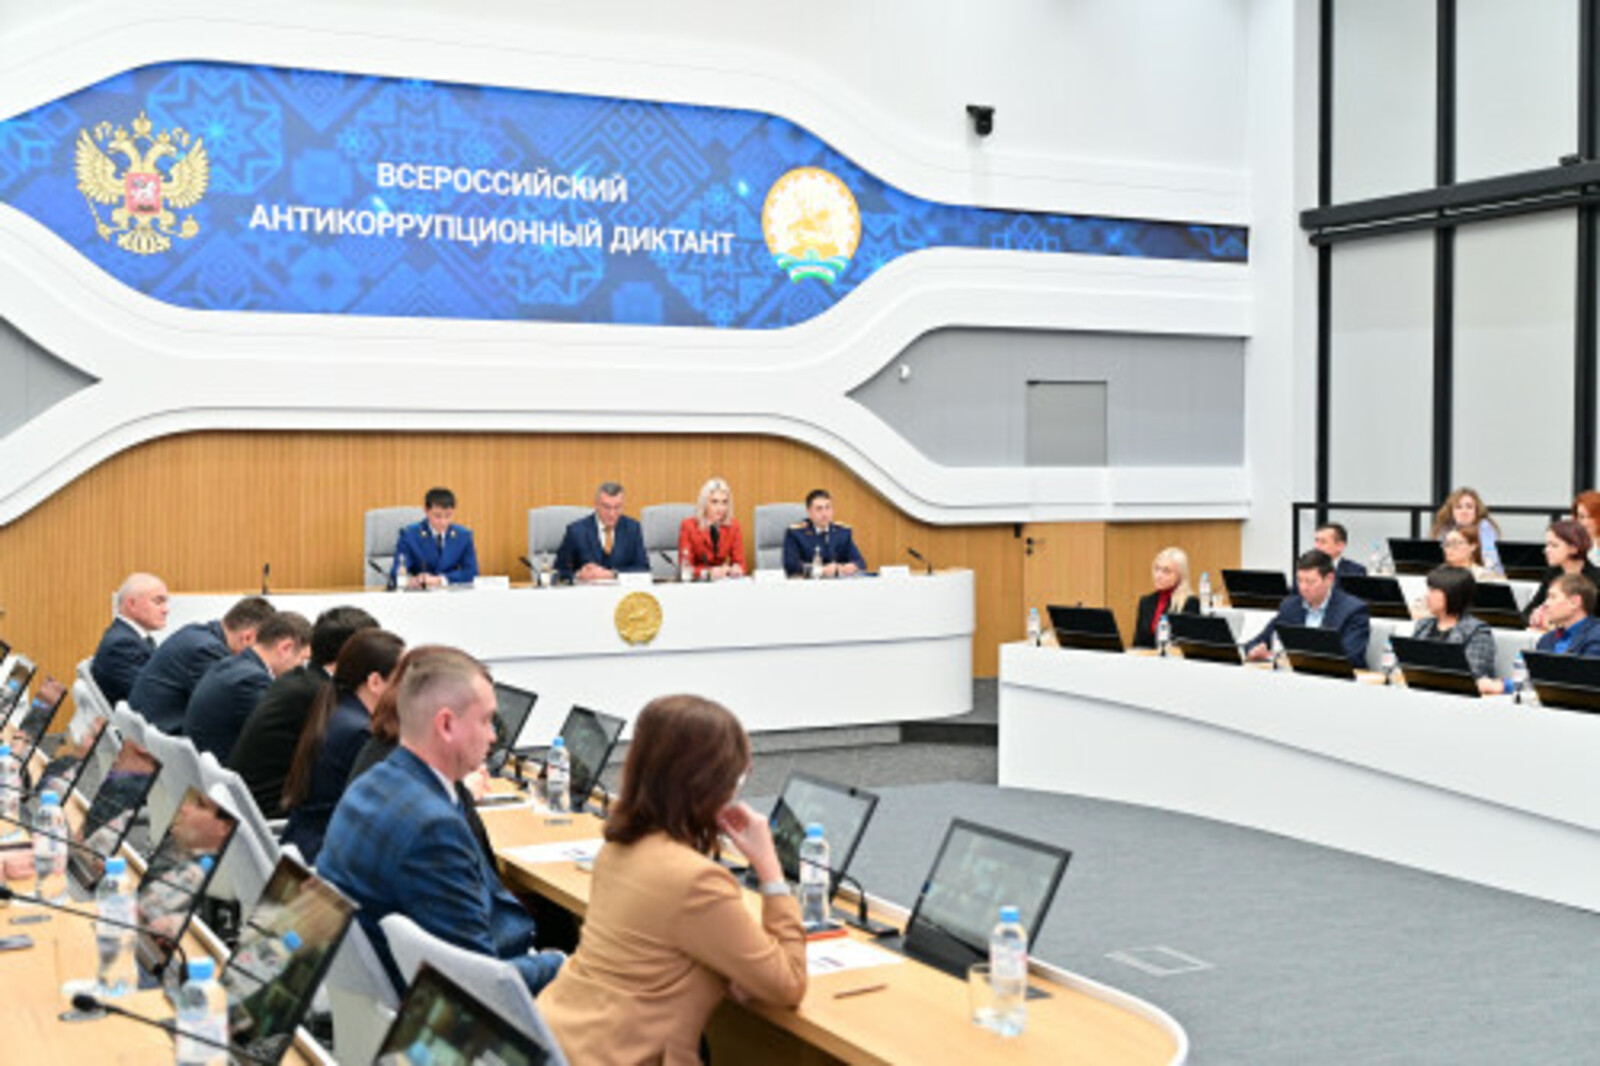 В Центре управления Республикой Башкортостан прошел Всероссийский антикоррупционный диктант